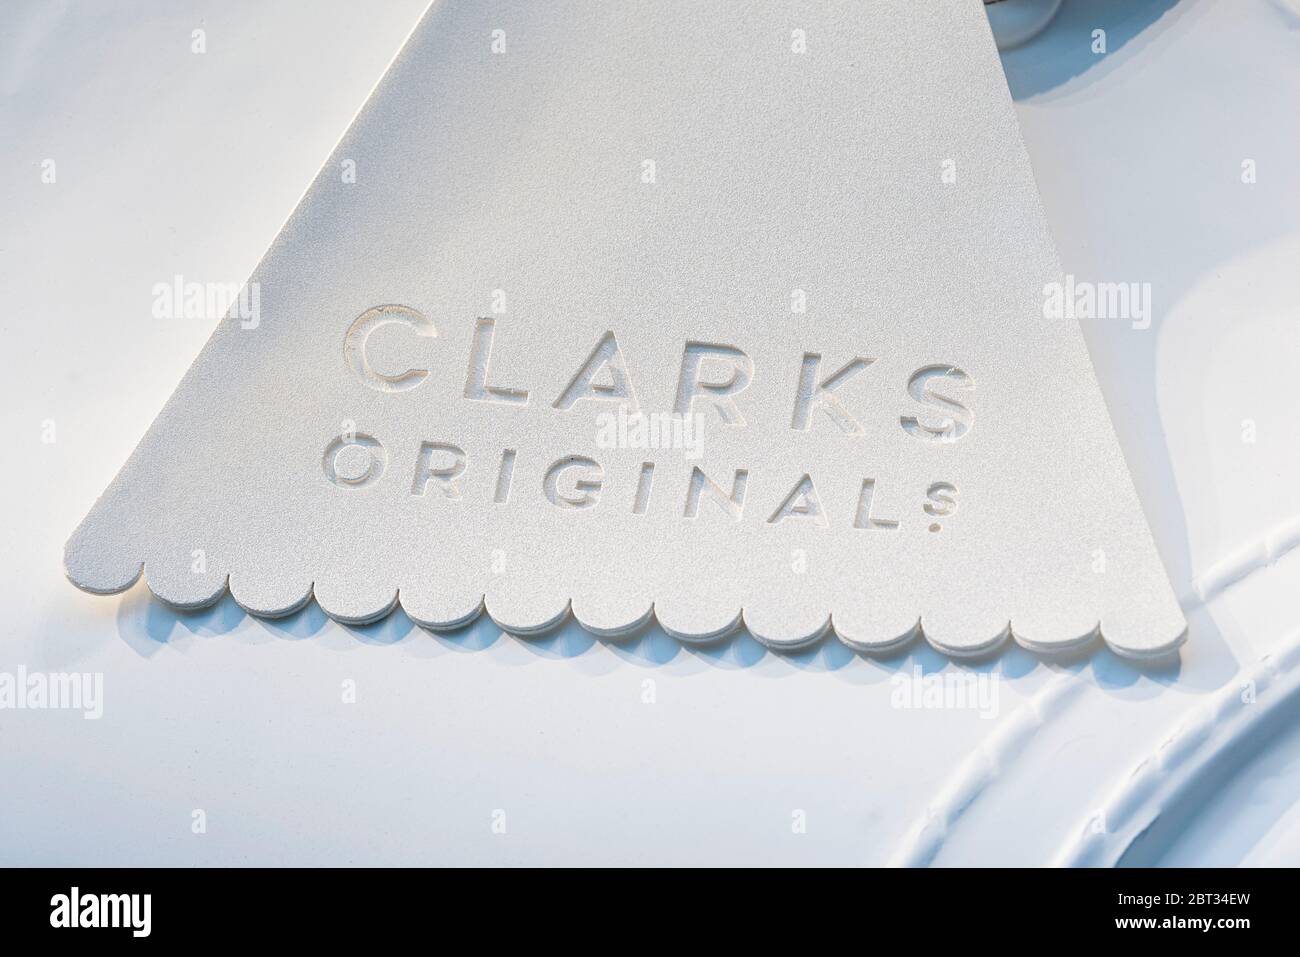 clarks stock online